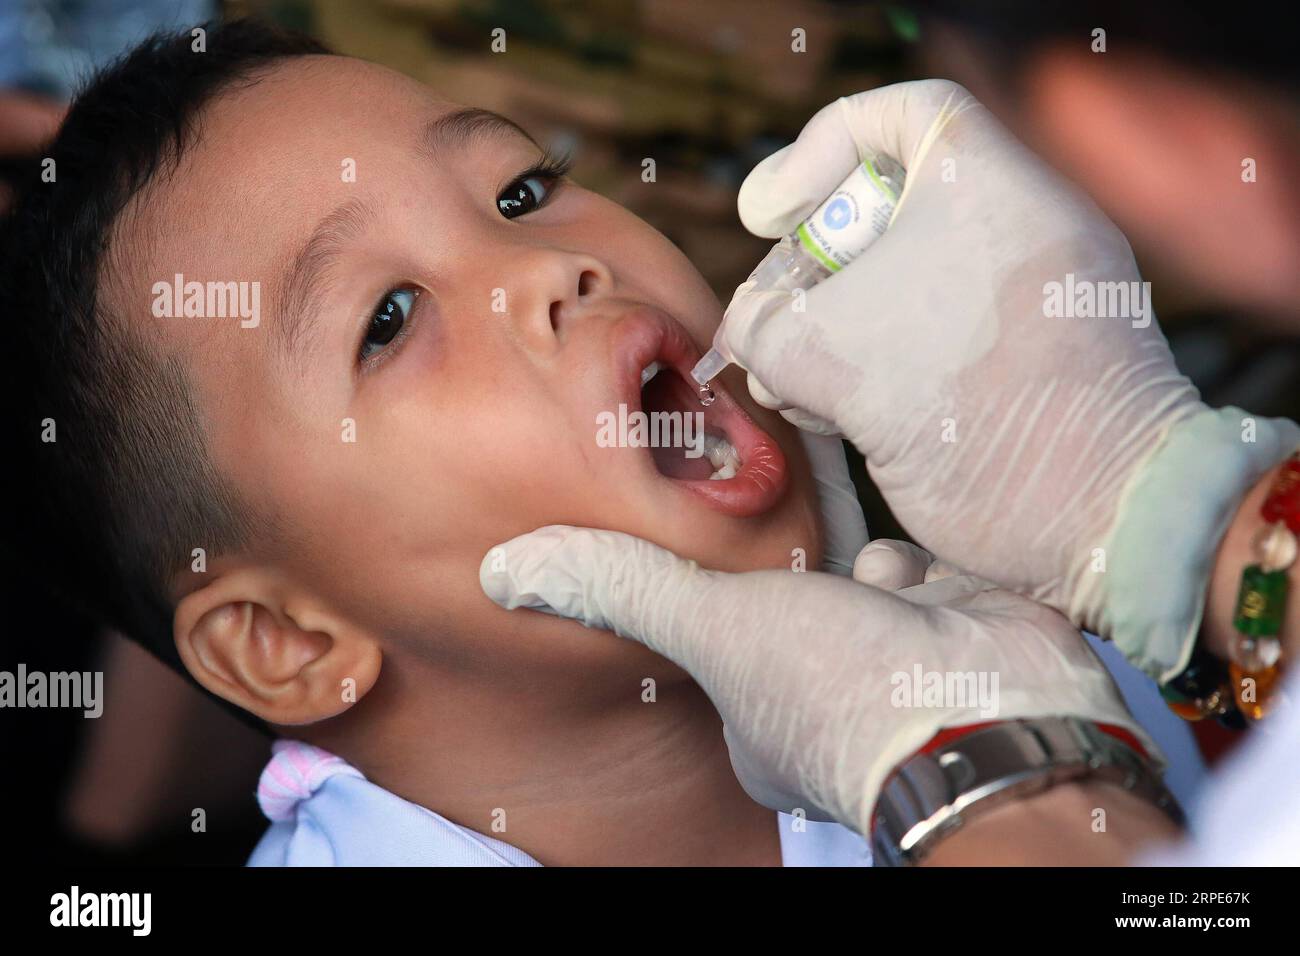 (190819) -- MANILLE, le 19 août 2019 -- Un garçon reçoit un vaccin antipoliomyélitique oral au cours d'une campagne antipoliomyélitique menée par le ministère philippin de la Santé à Manille, aux Philippines, le 19 août 2019.) PHILIPPINES-MANILLE-CAMPAGNE DE VACCINATION ANTI-POLIO ROUELLEXUMALI PUBLICATIONXNOTXINXCHN Banque D'Images